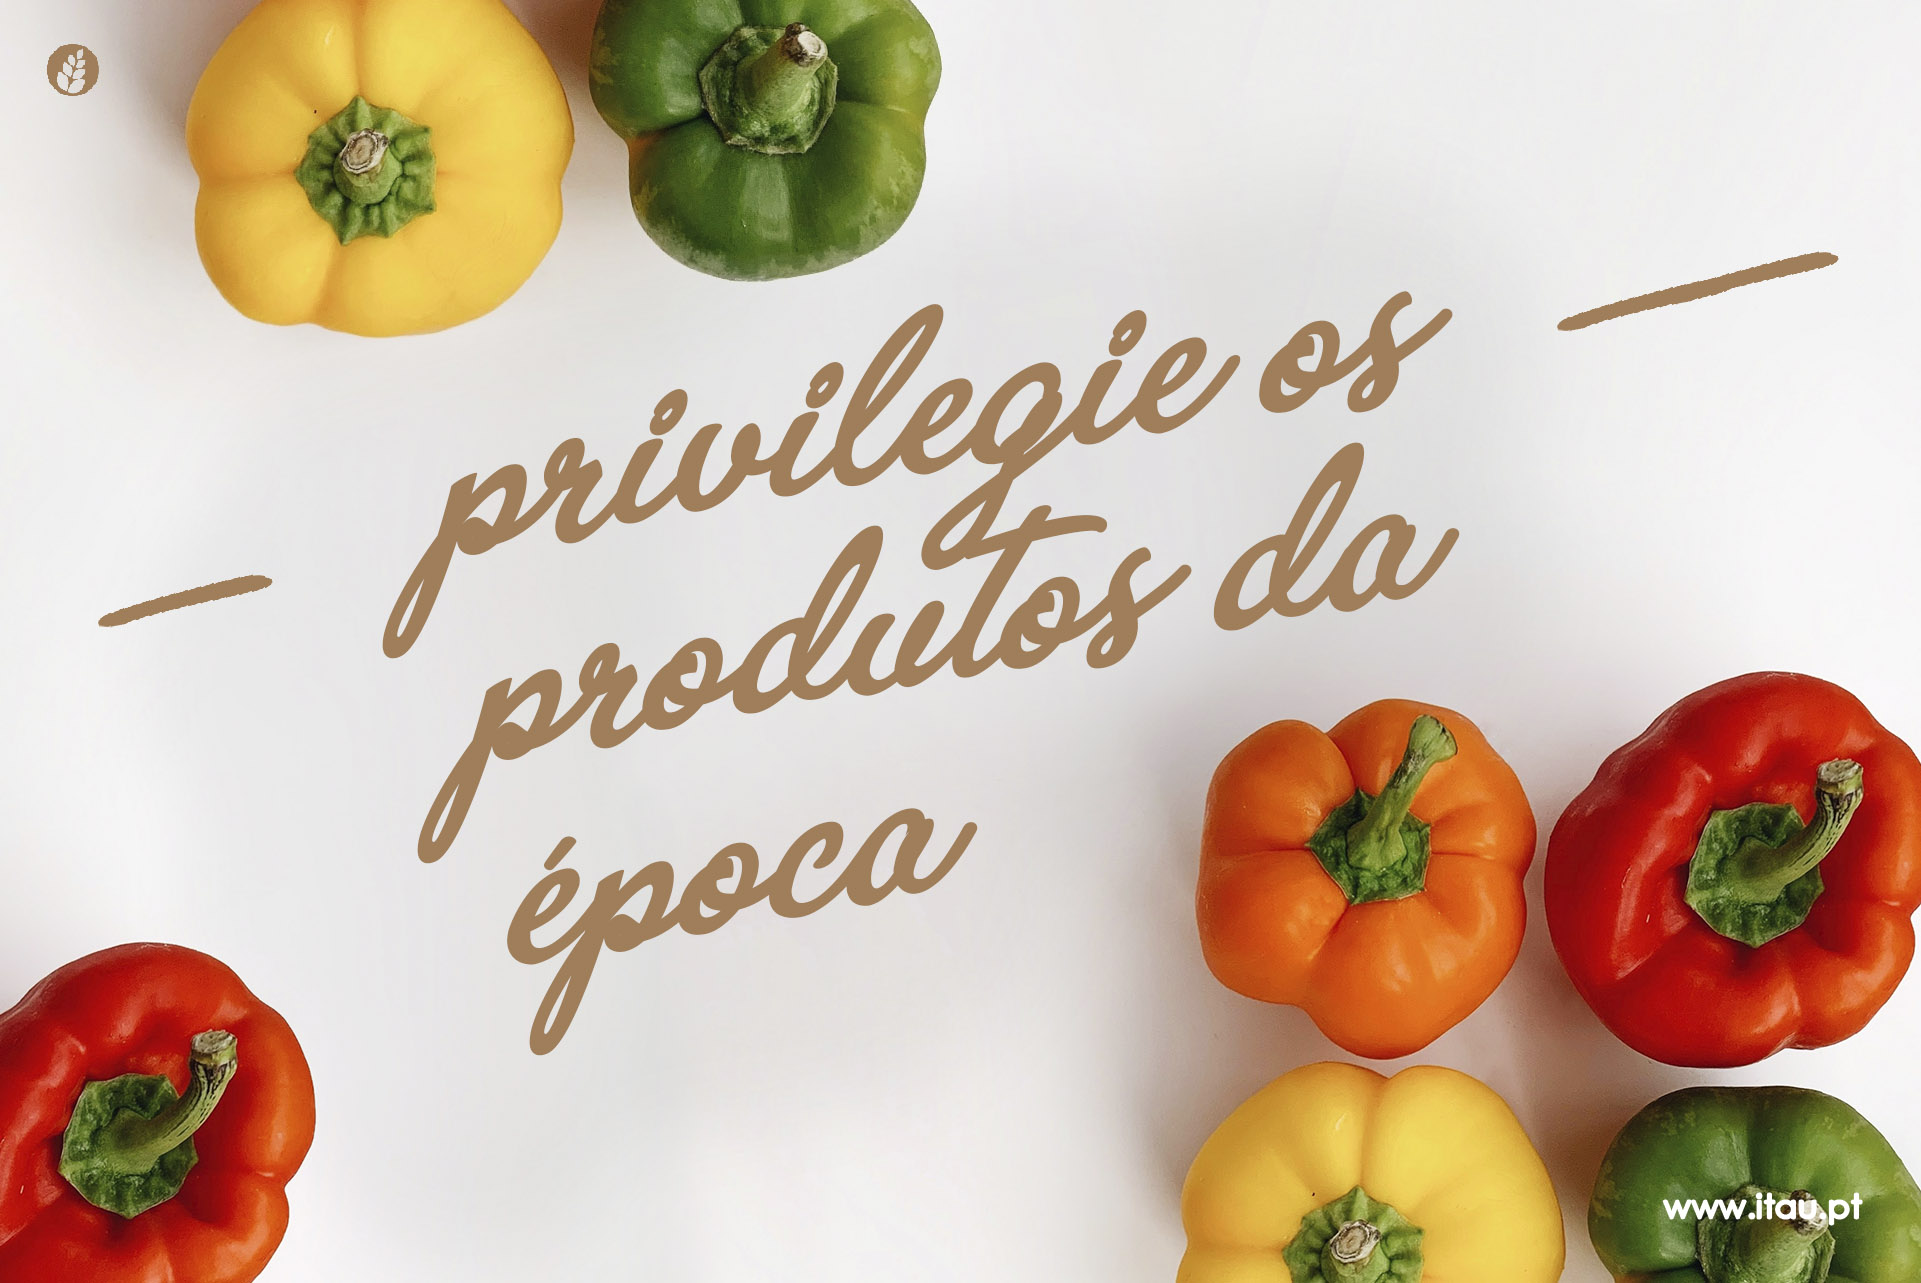 Privilegie os produtos da época – Pimento